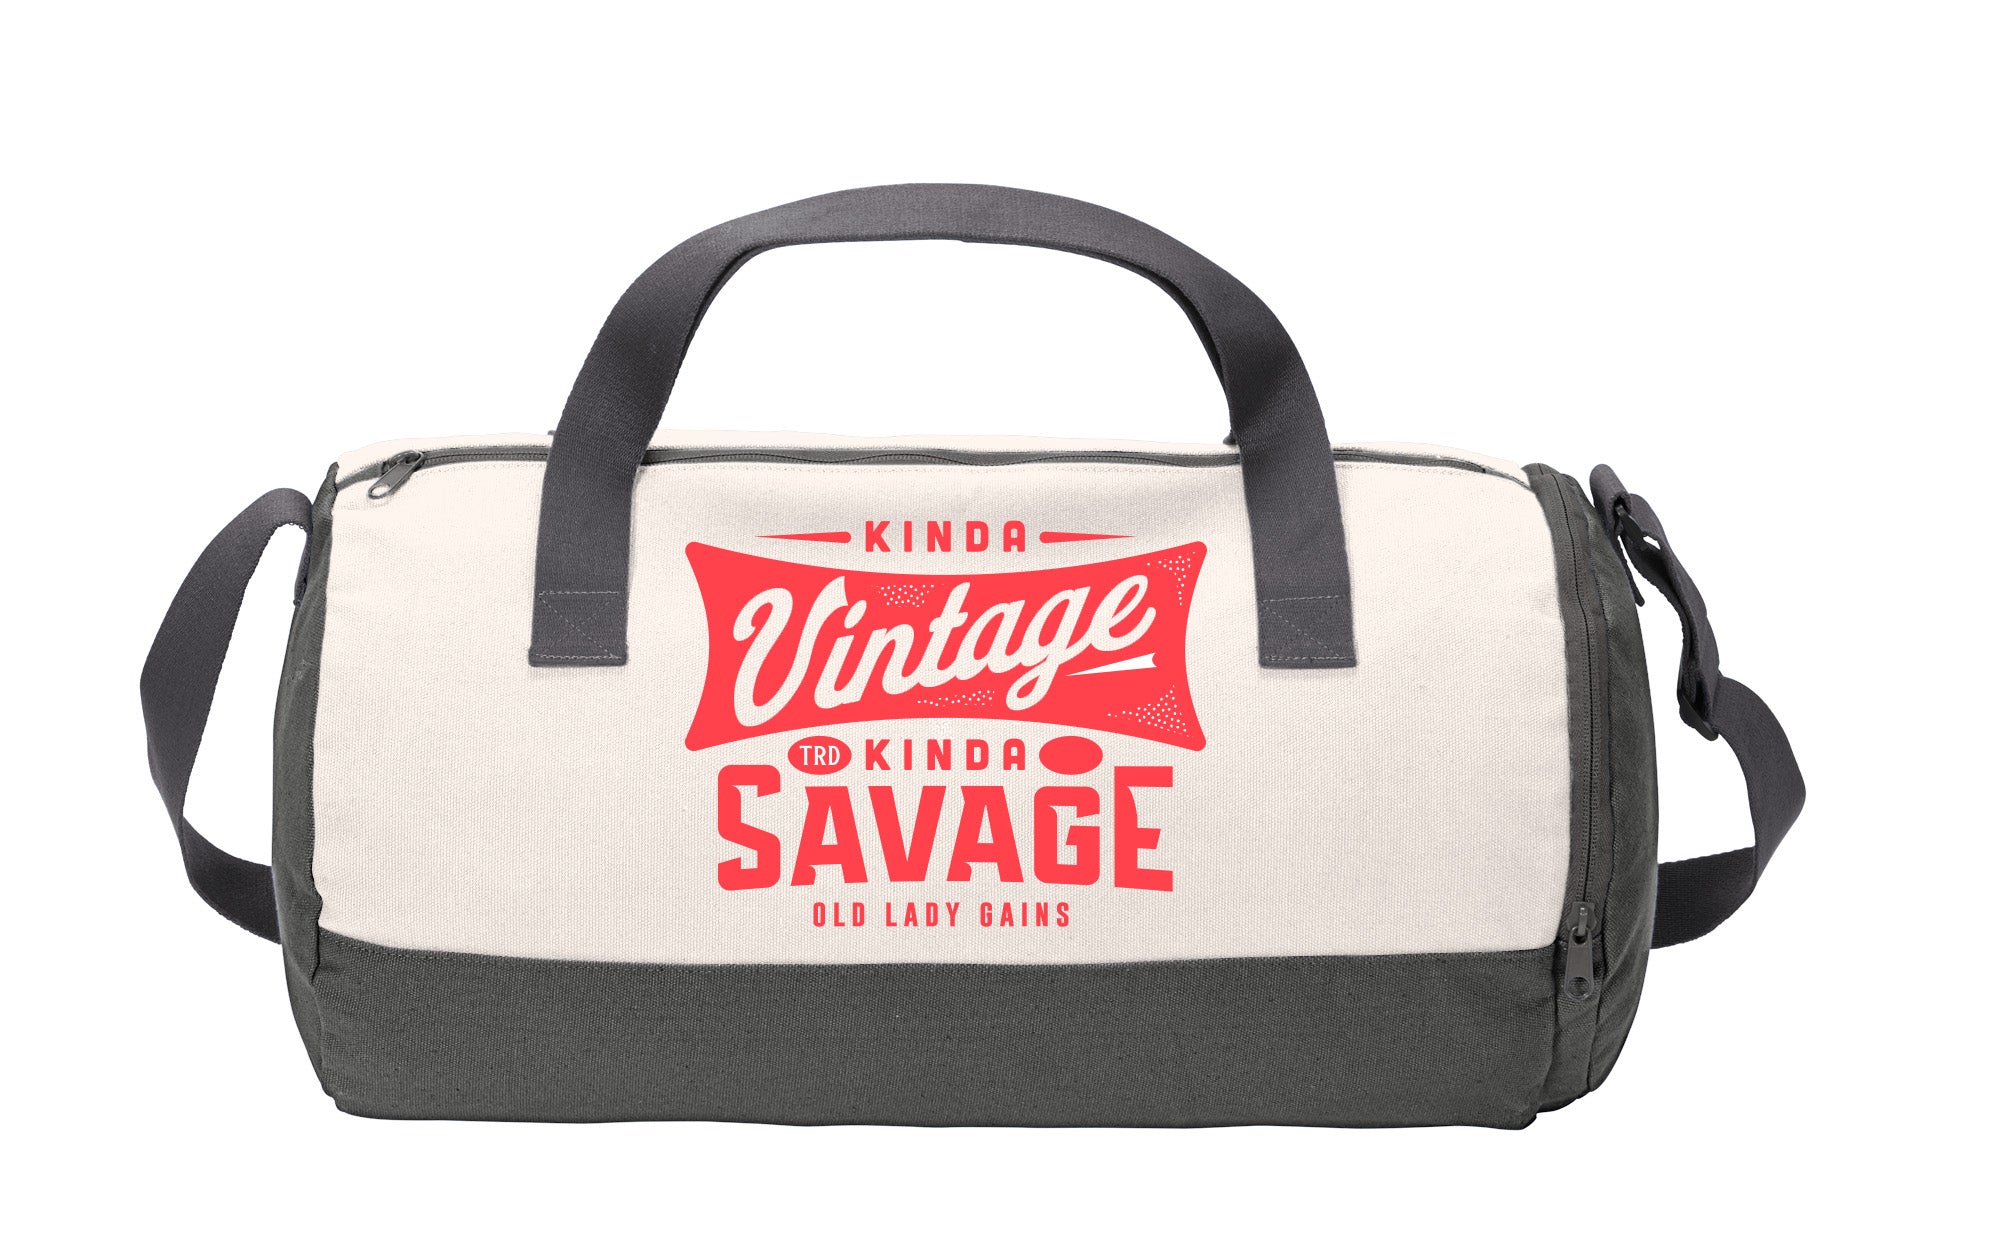 Kinda Vintage Gym Bag – Old Lady Gains